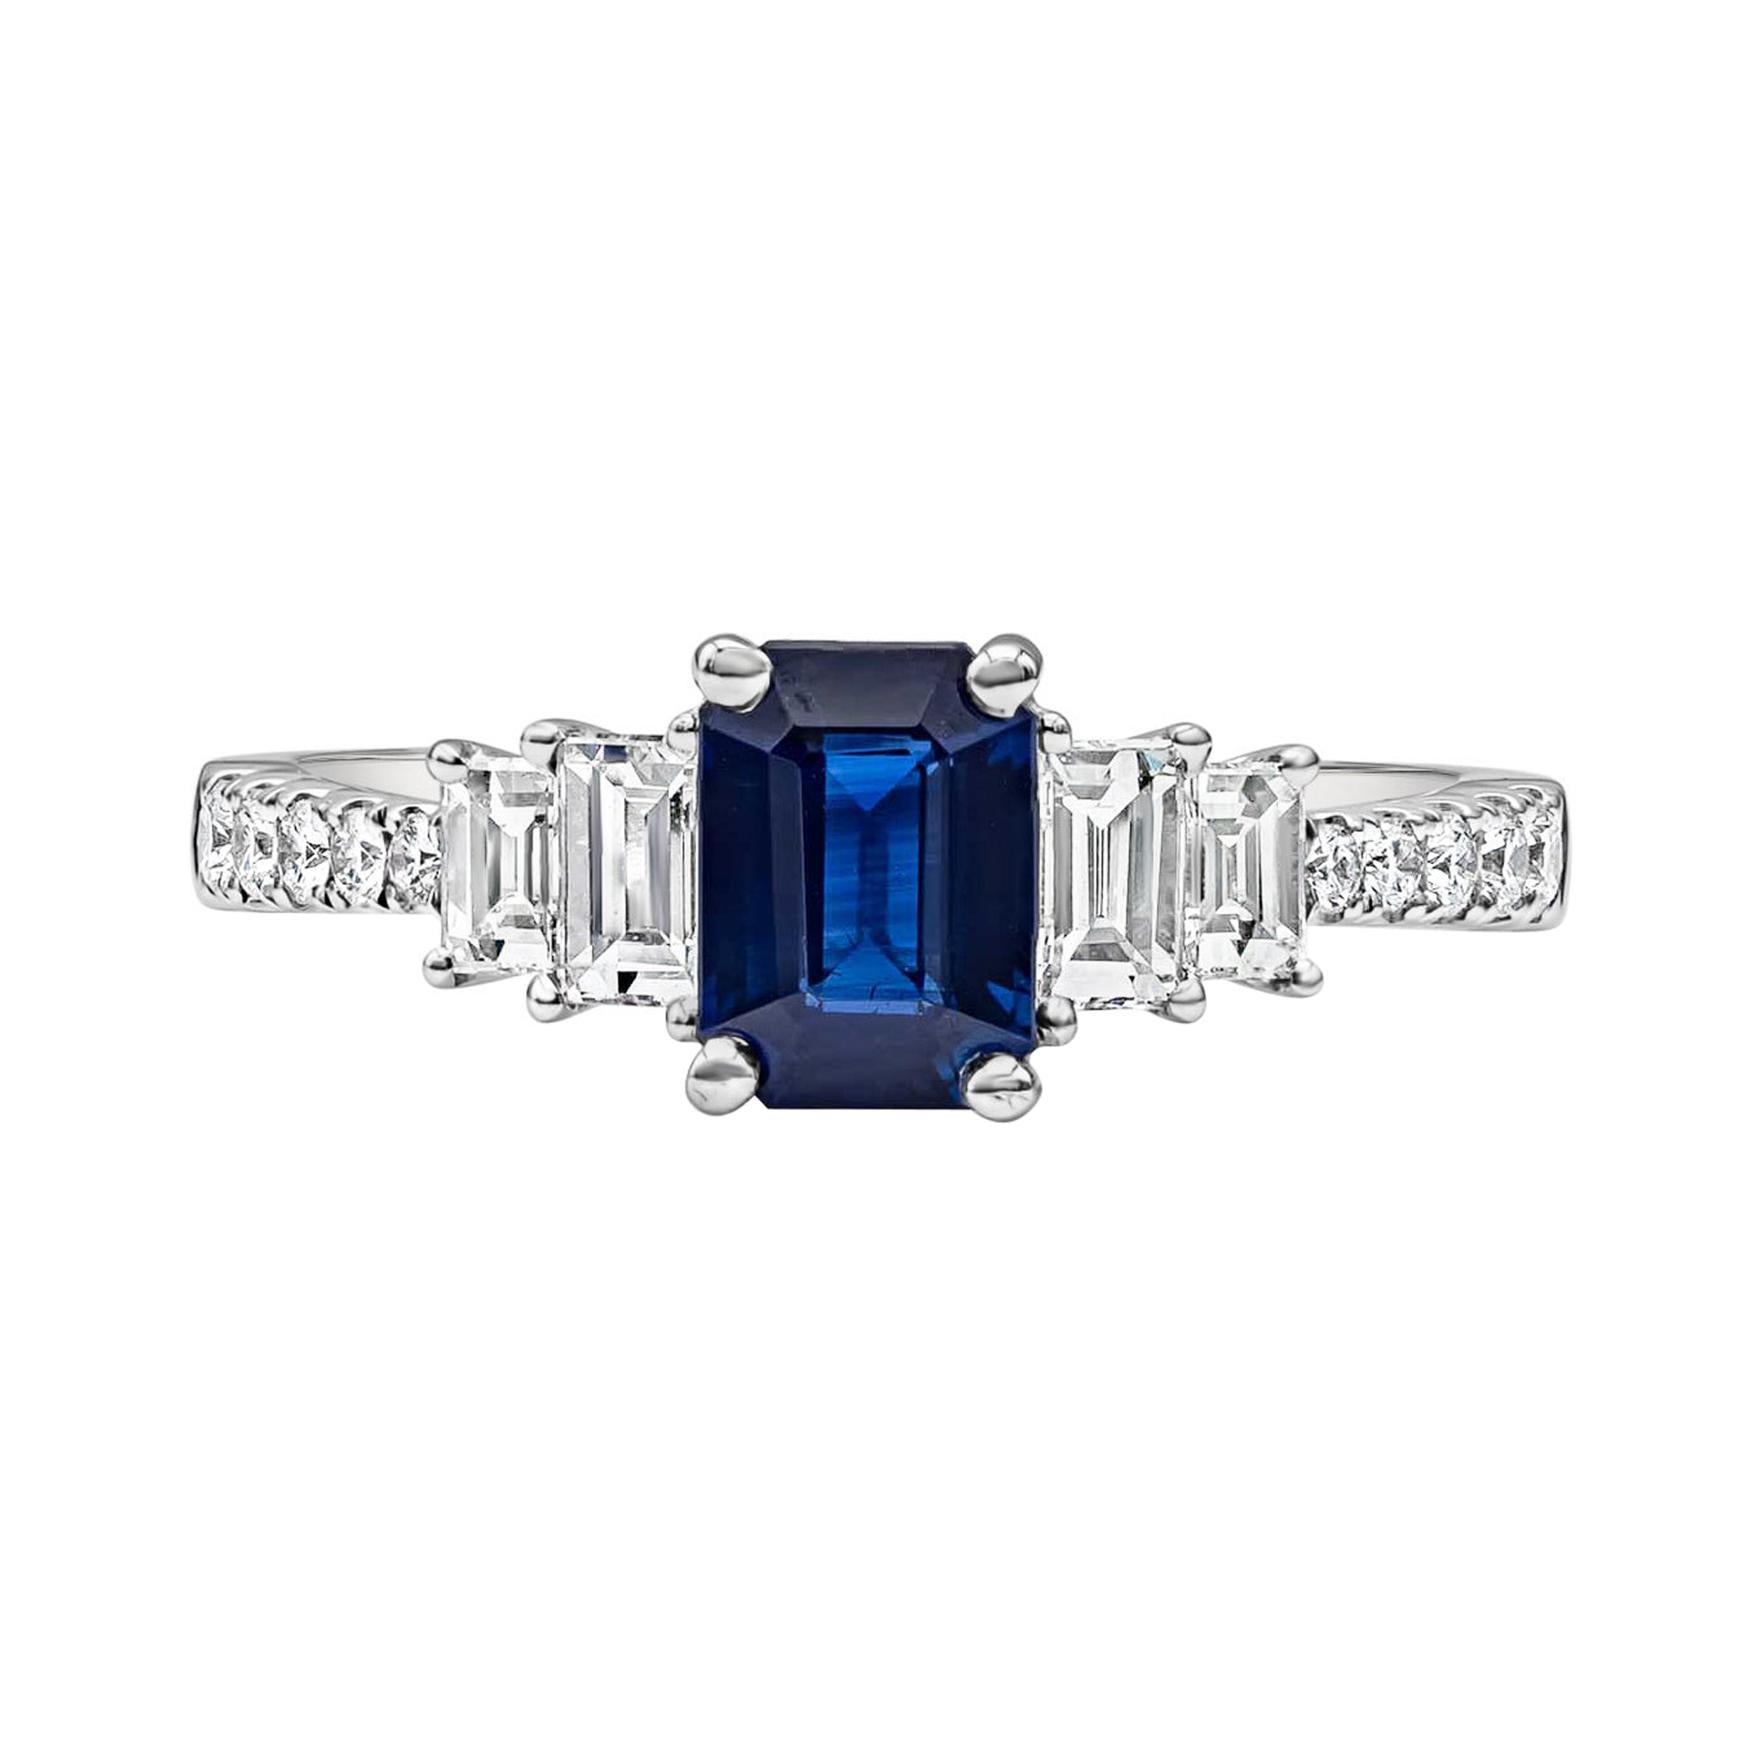 Roman Malakov Bague de fiançailles avec saphir bleu taille émeraude de 1.17 carats et diamants